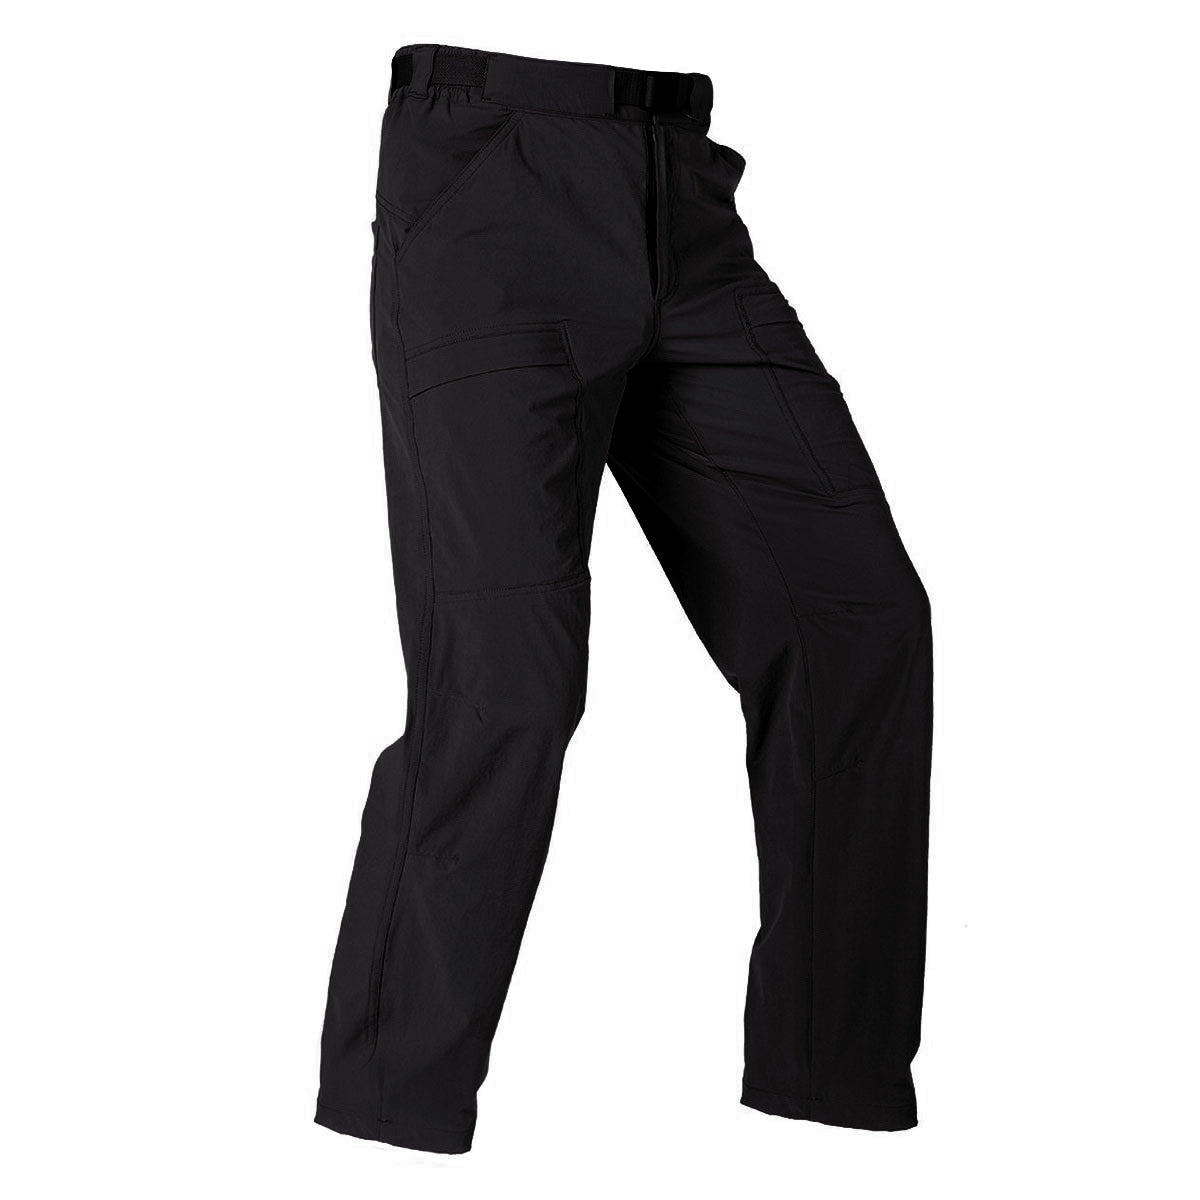 Men's Tactical Pants Quick-dry Lightweight Waterproof Cargo Hiking Pants  hot